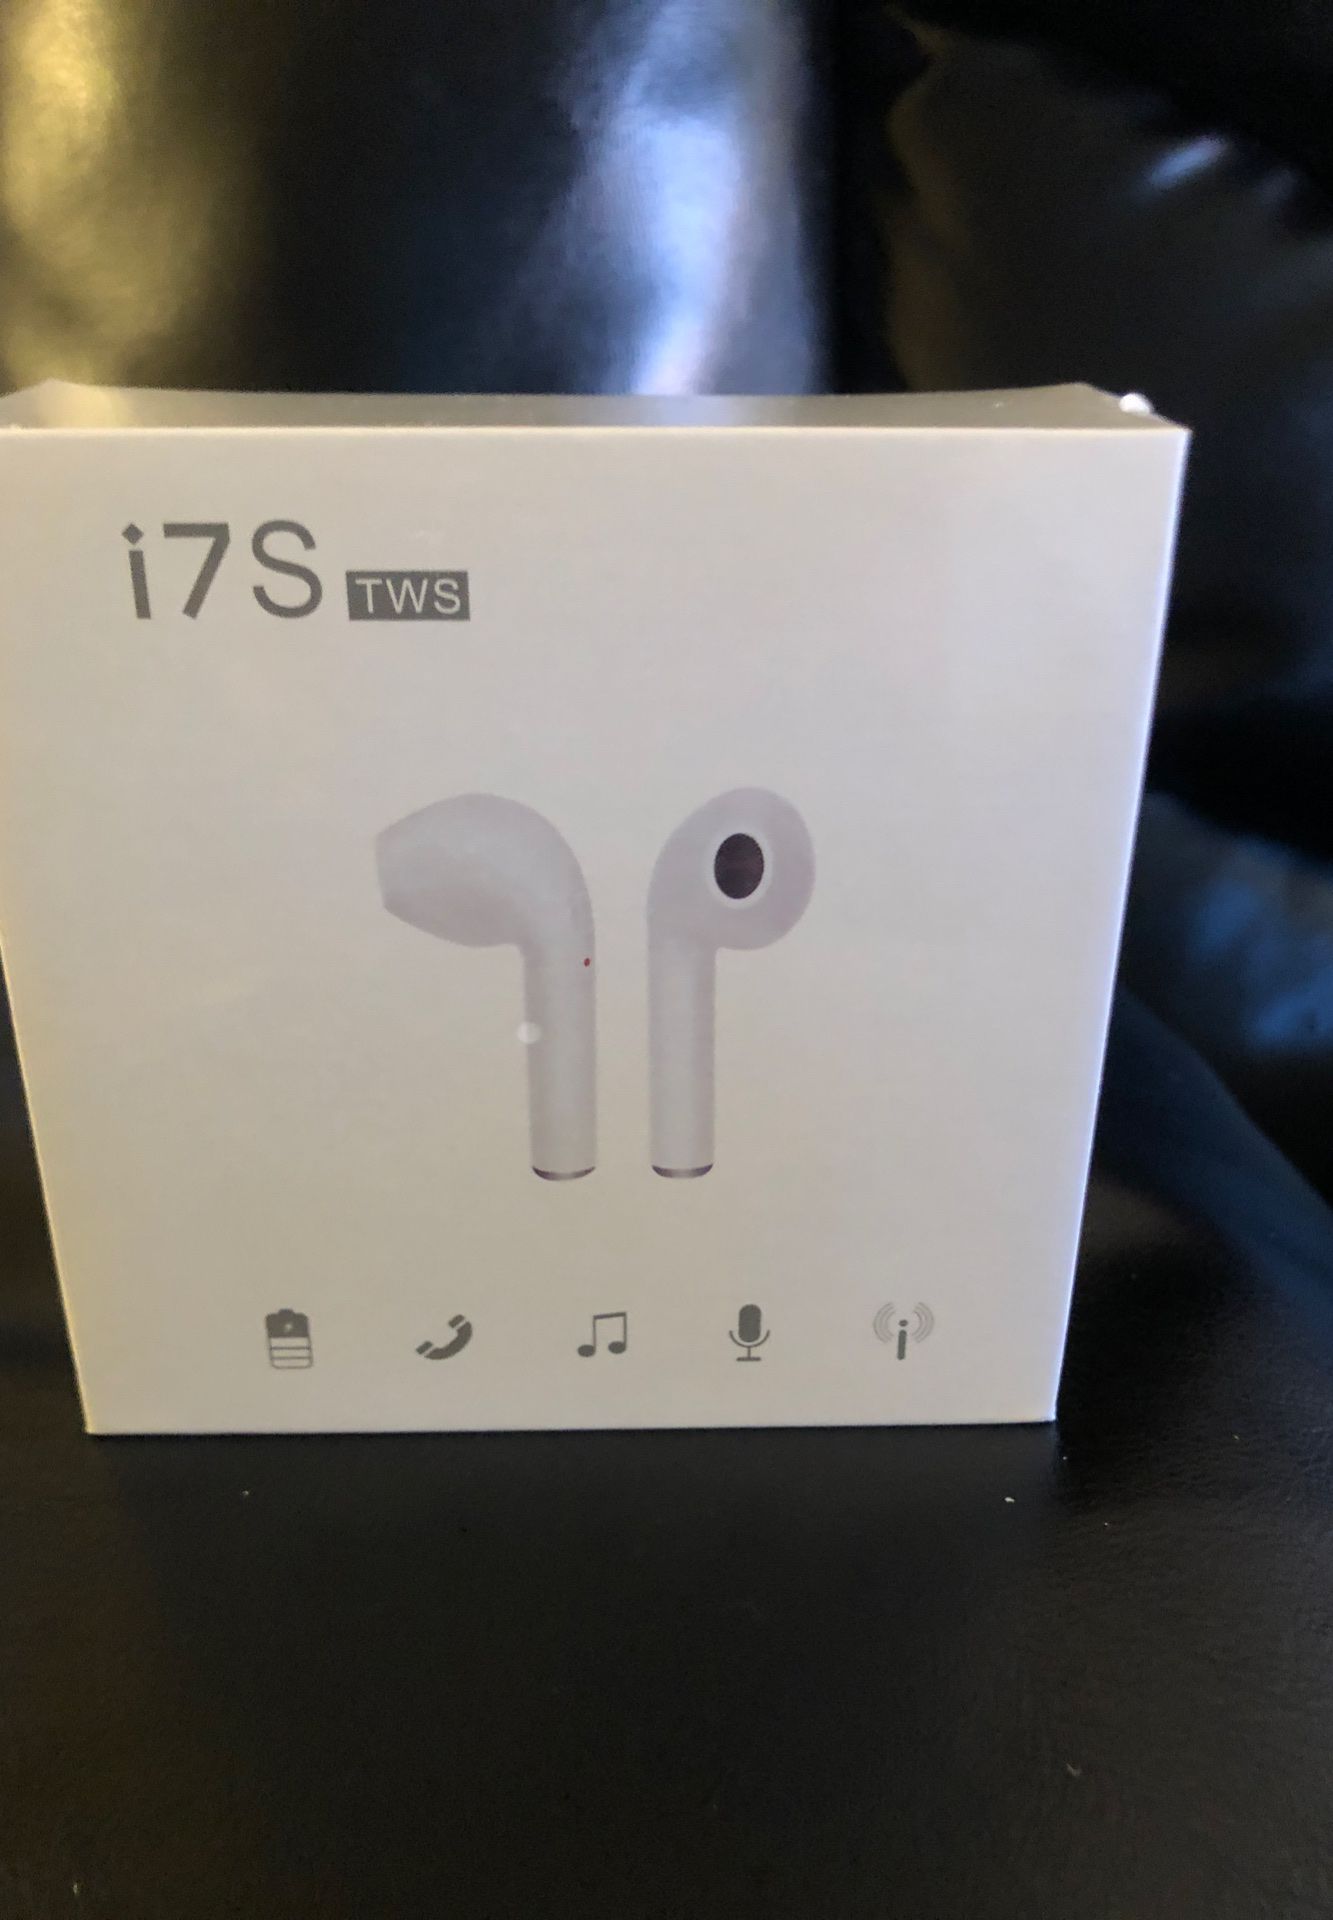 Wireless earbuds similar to Apple EarPods